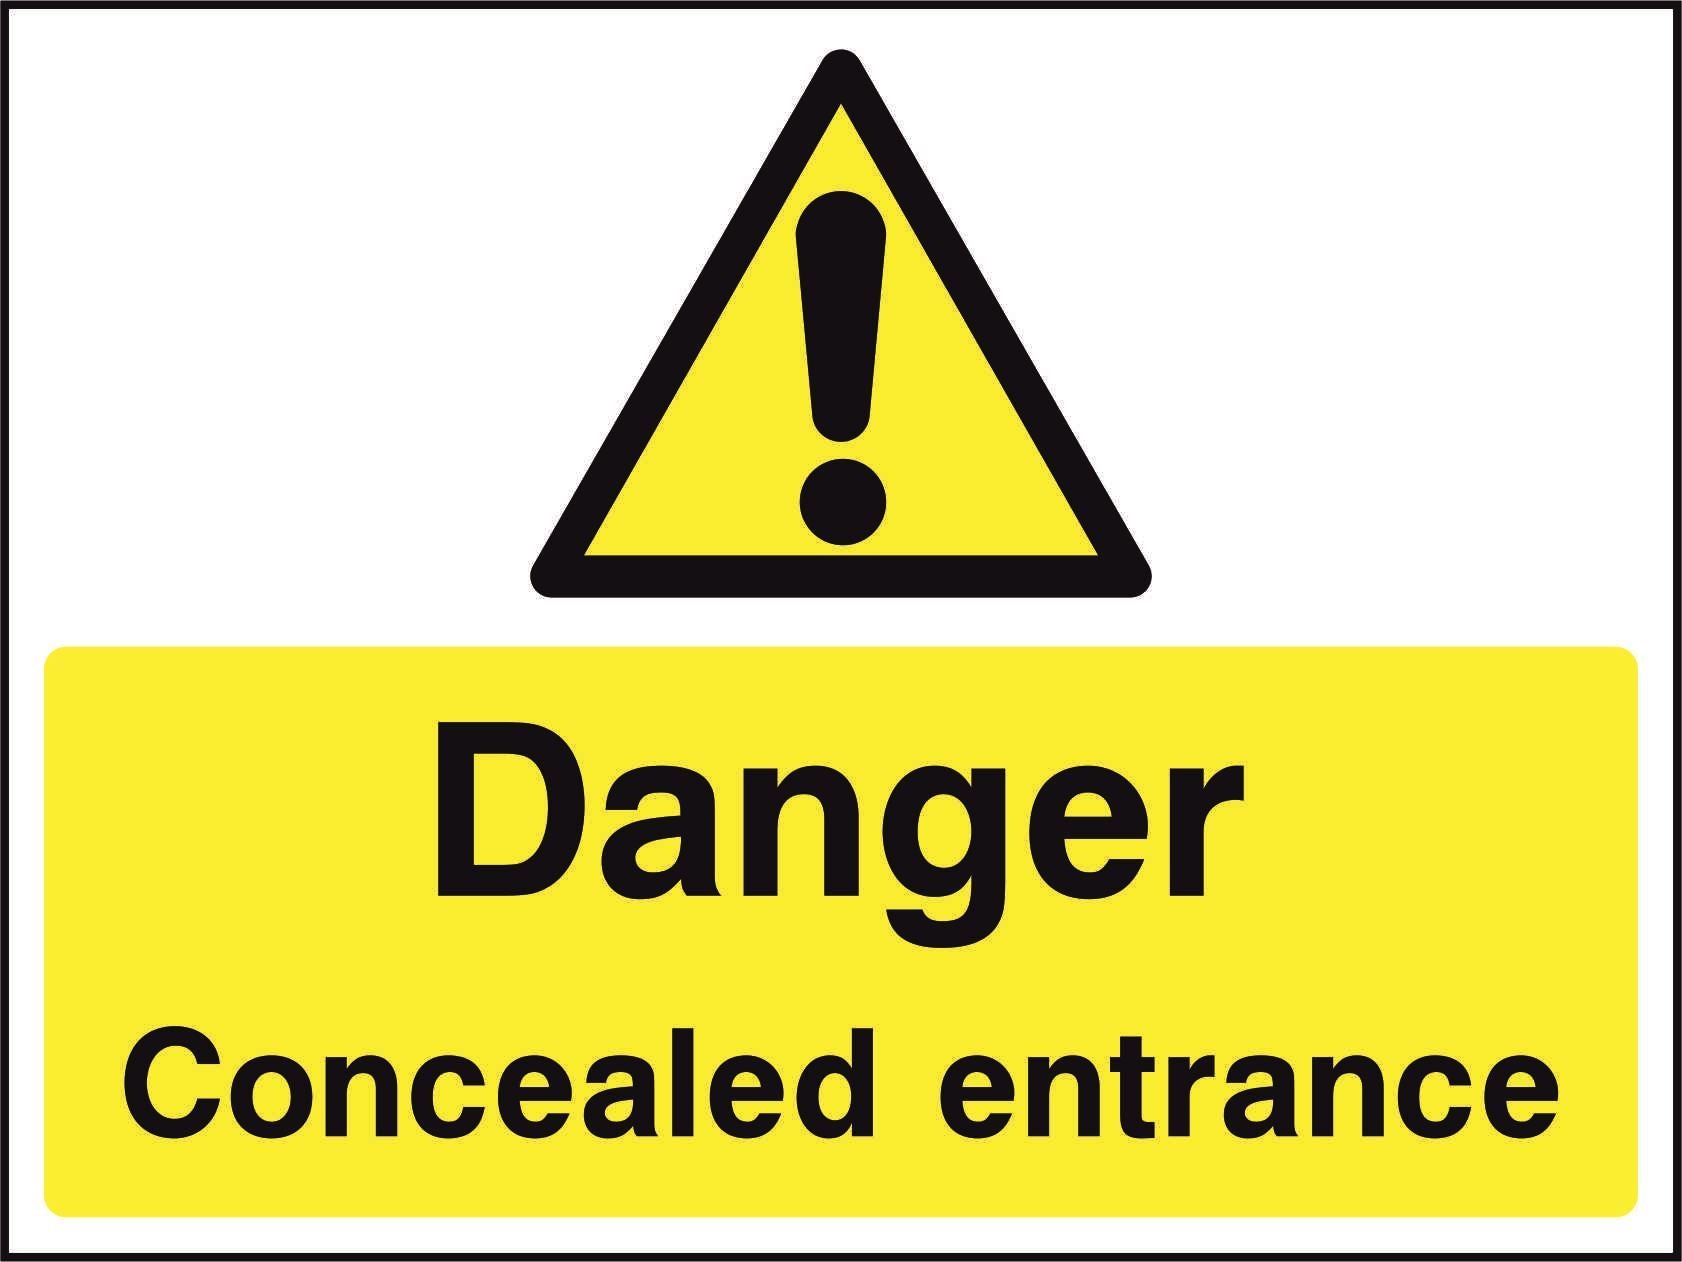 Danger Concealed entrance